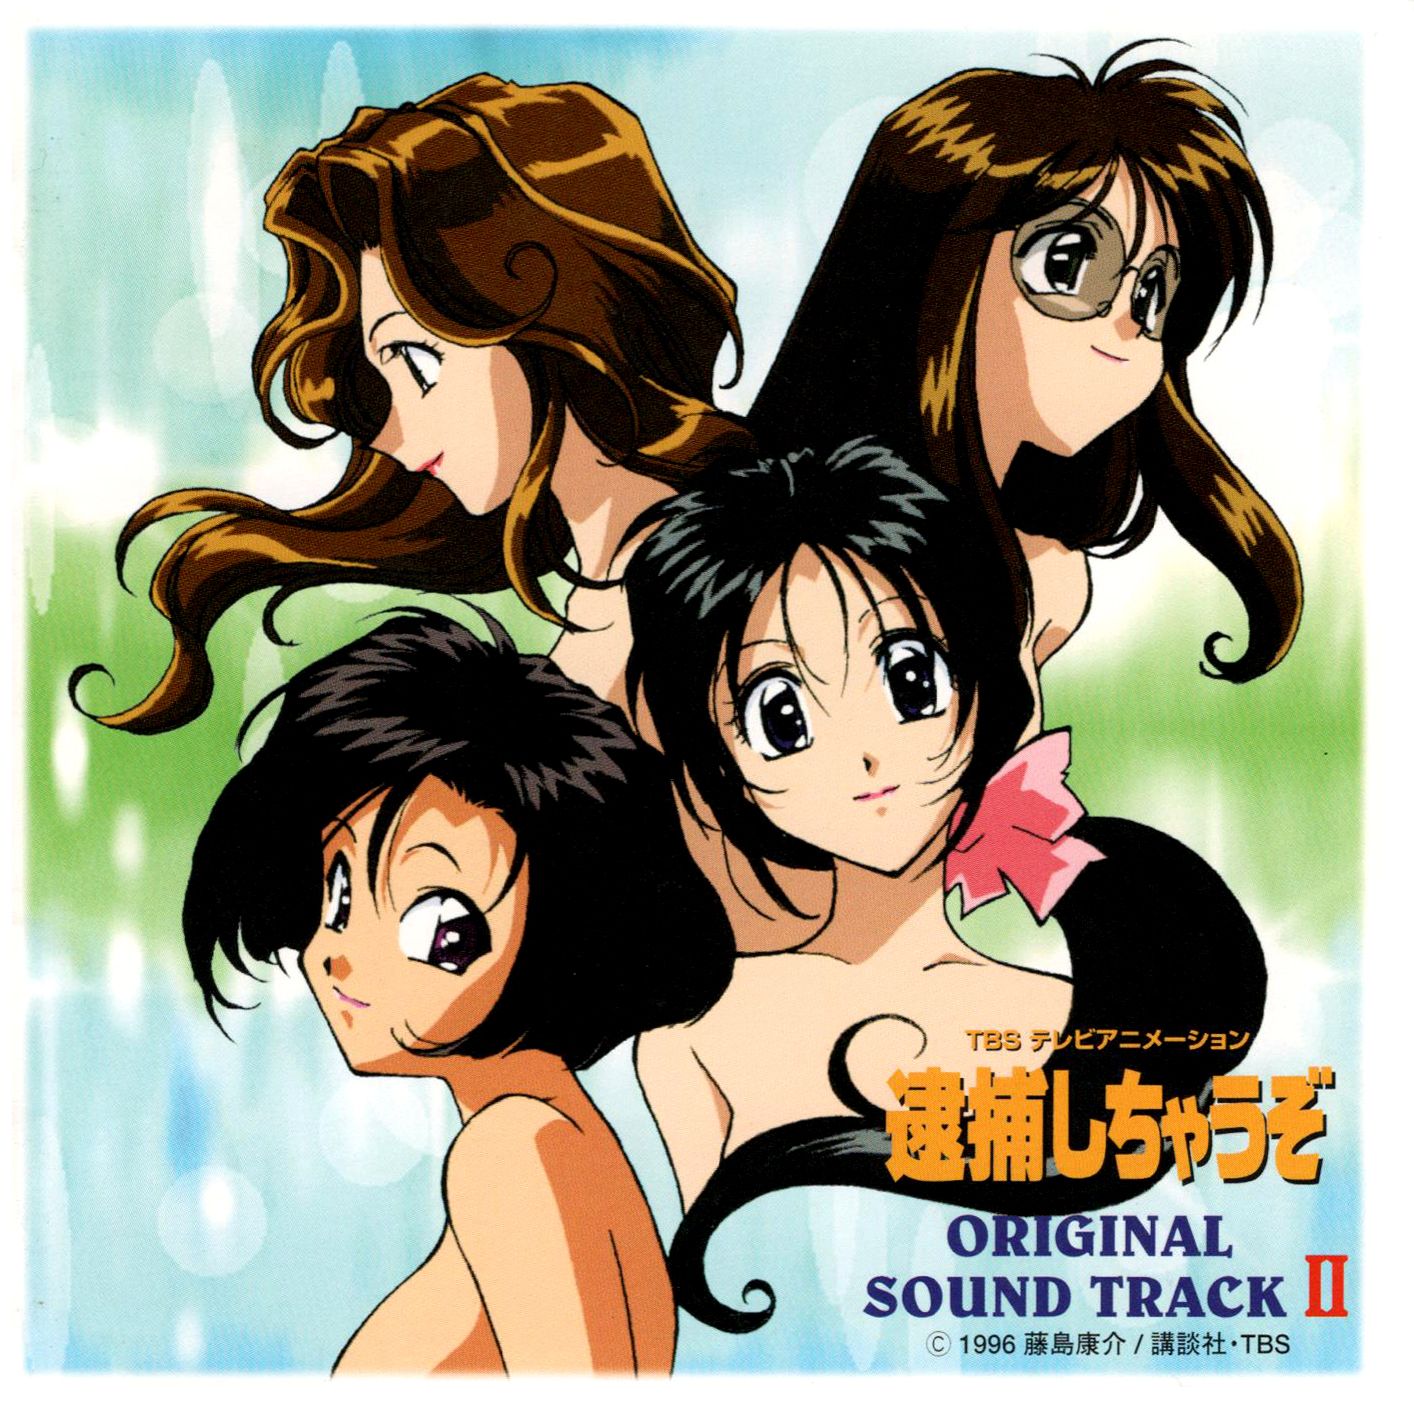 [ALBUM] Taiho Shichauzo ORIGINAL SOUND TRACK II